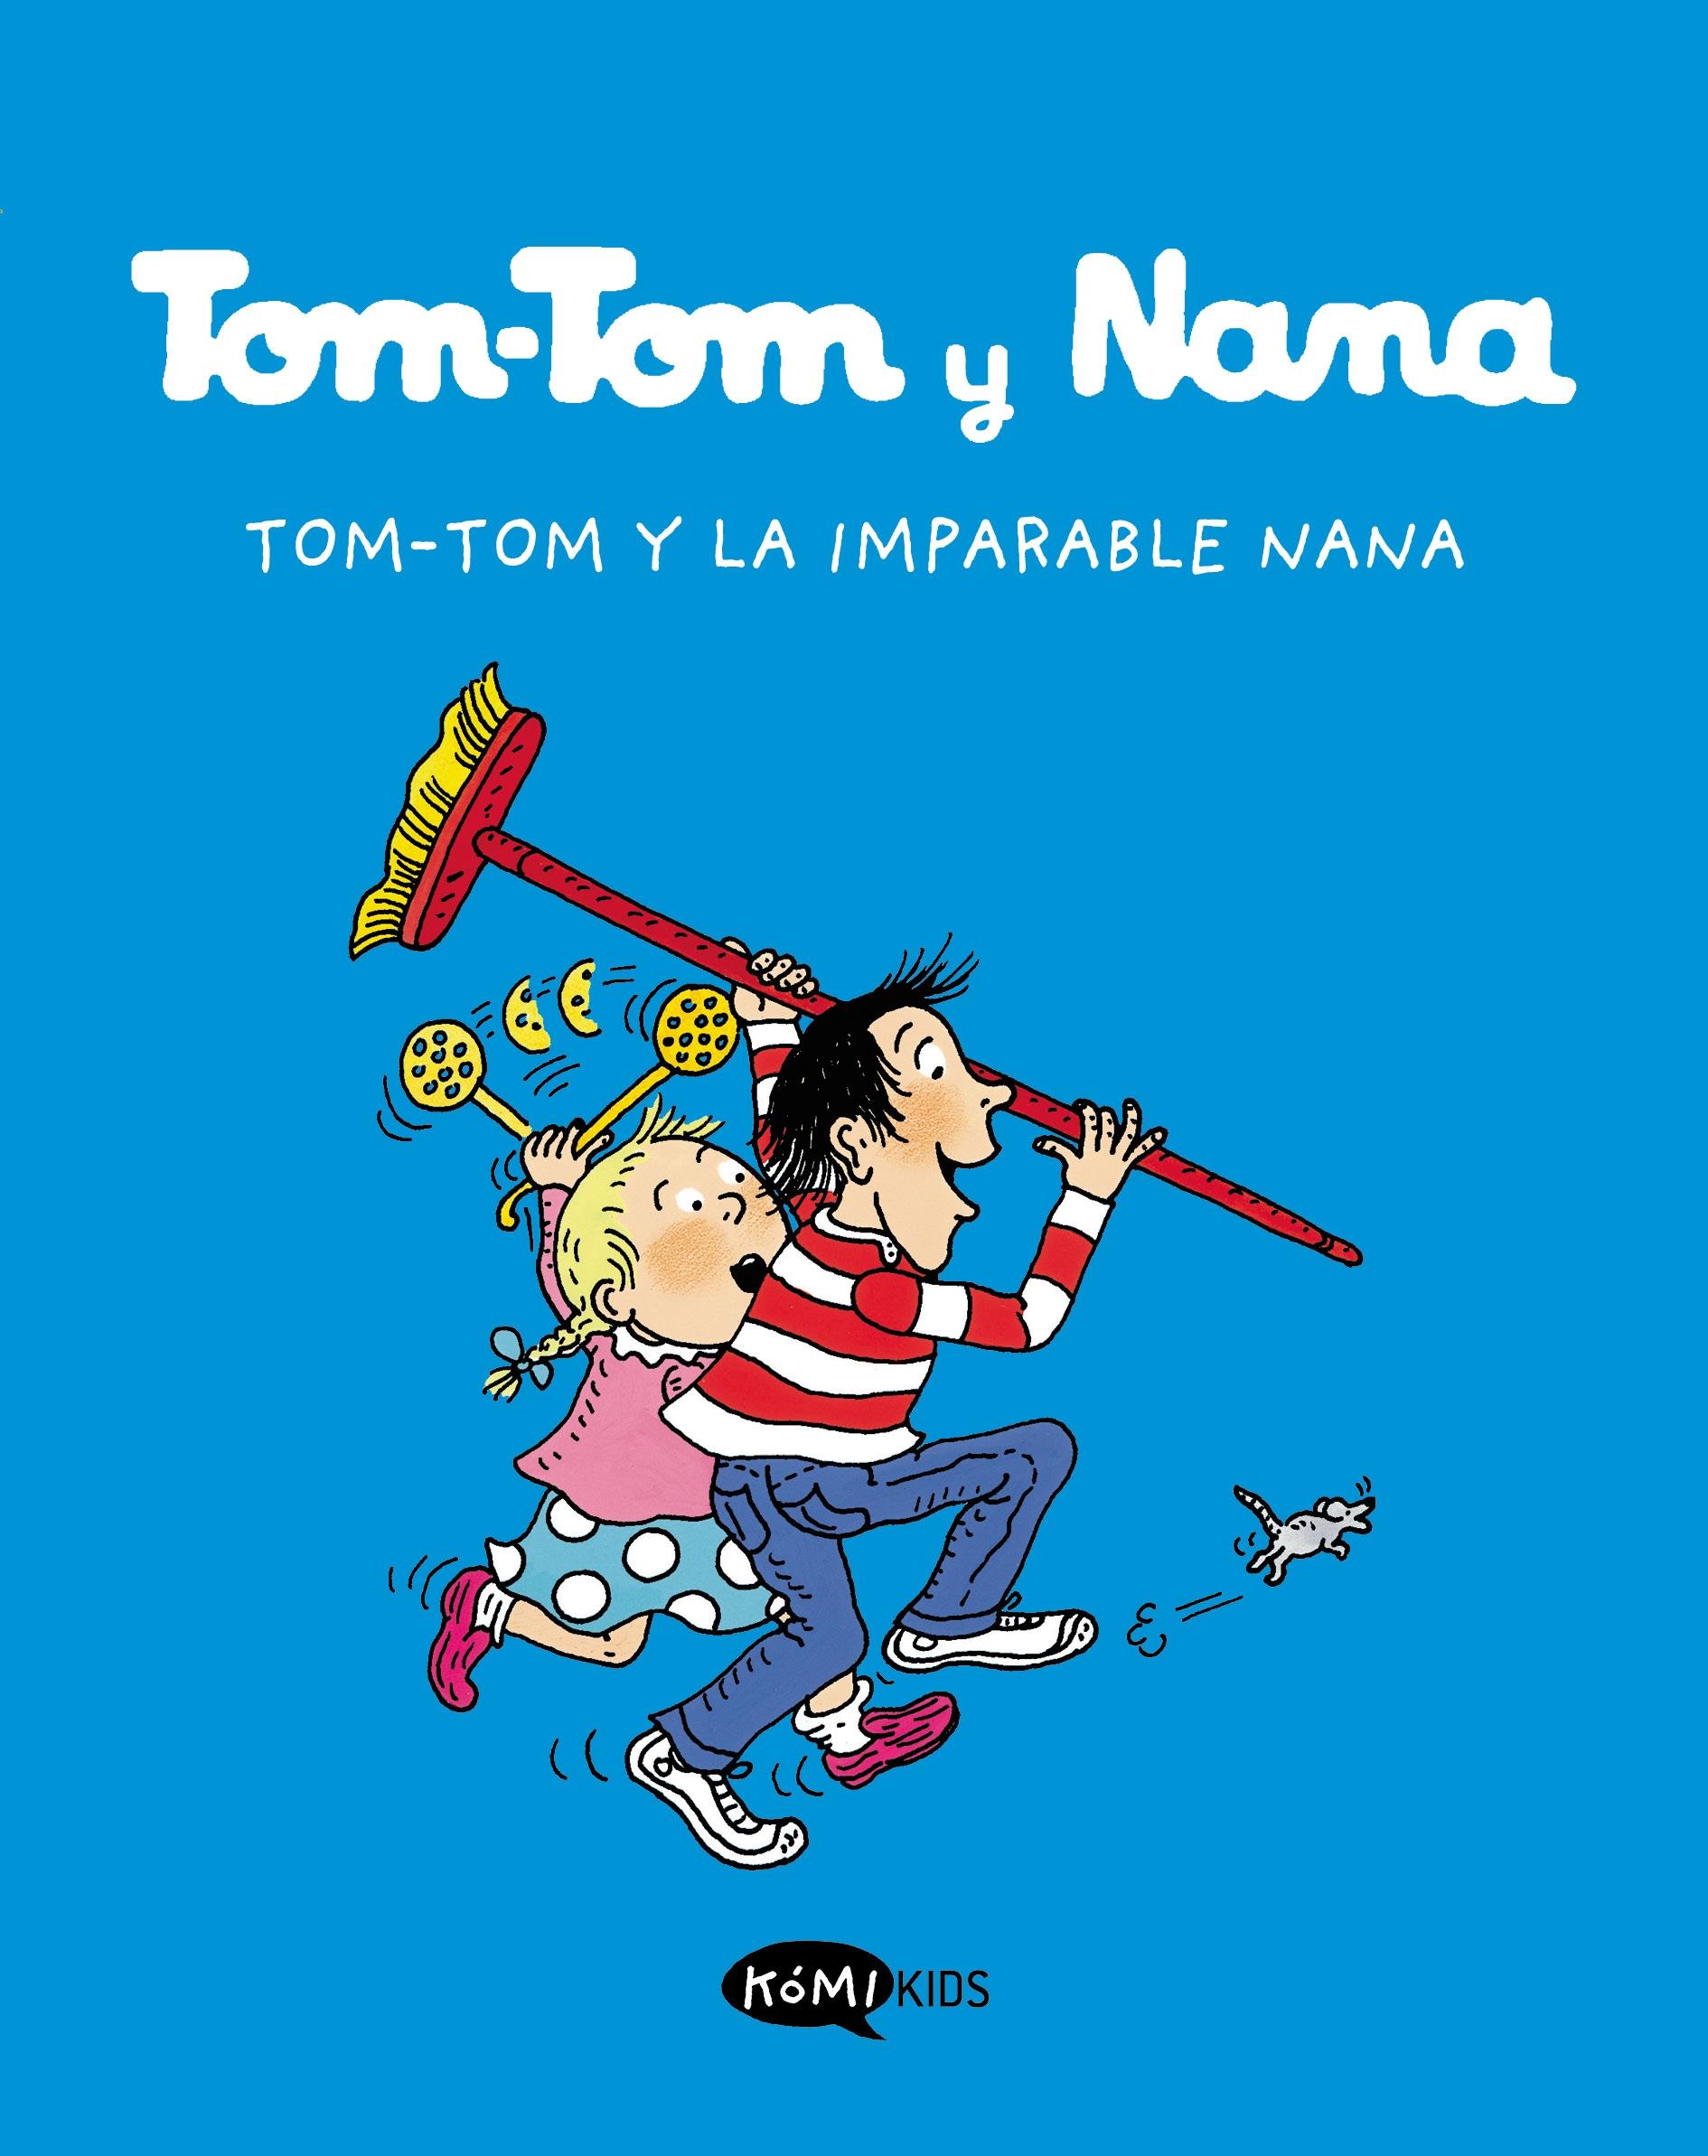 Tom-Tom y Nana 1 "Tom-Tom y la Imparable Nana". 